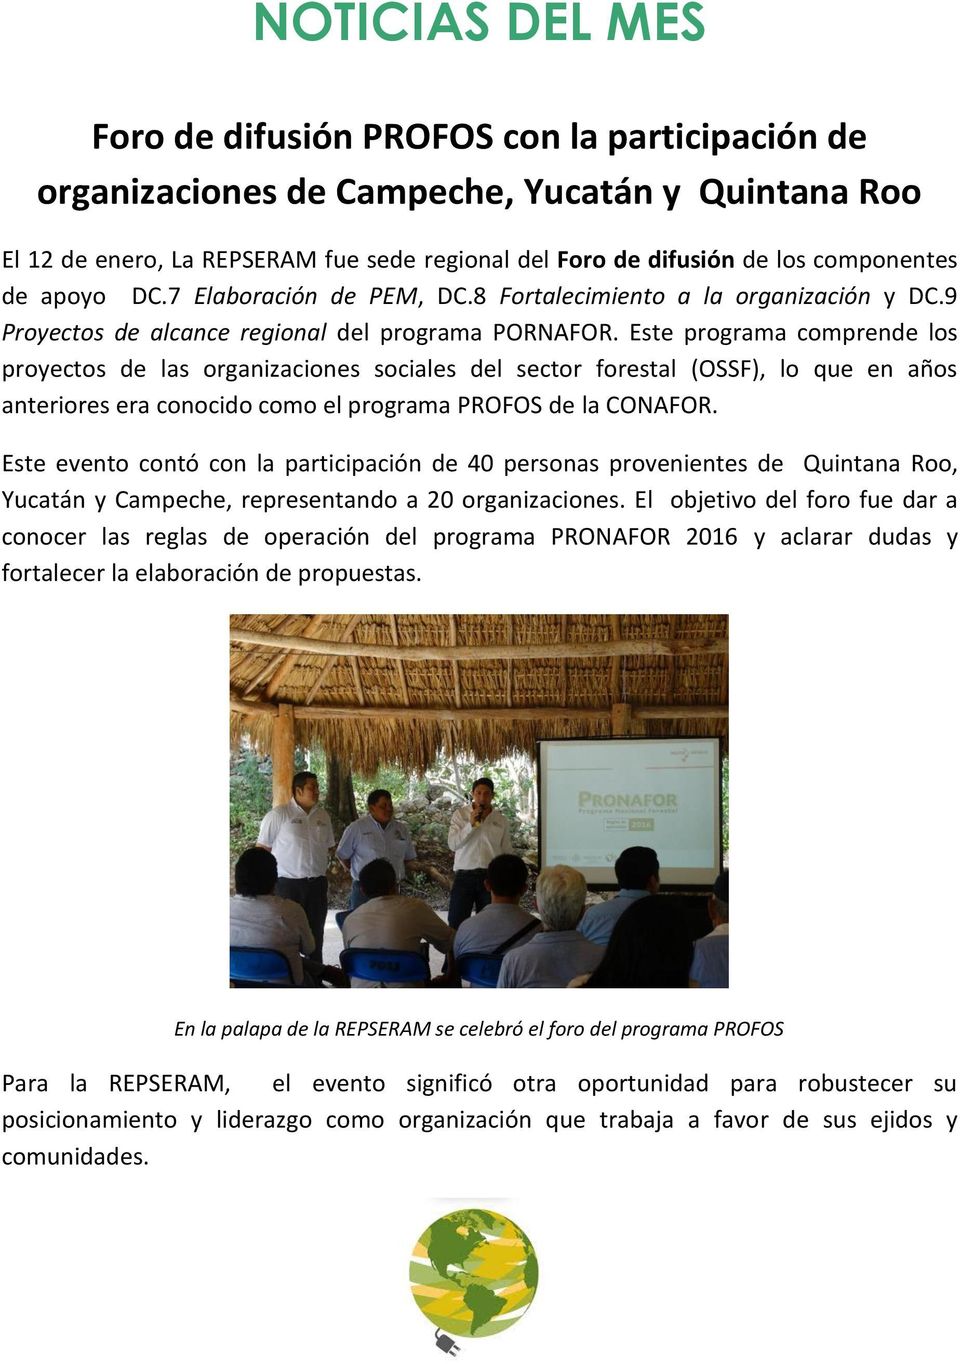 Este programa comprende los proyectos de las organizaciones sociales del sector forestal (OSSF), lo que en años anteriores era conocido como el programa PROFOS de la CONAFOR.